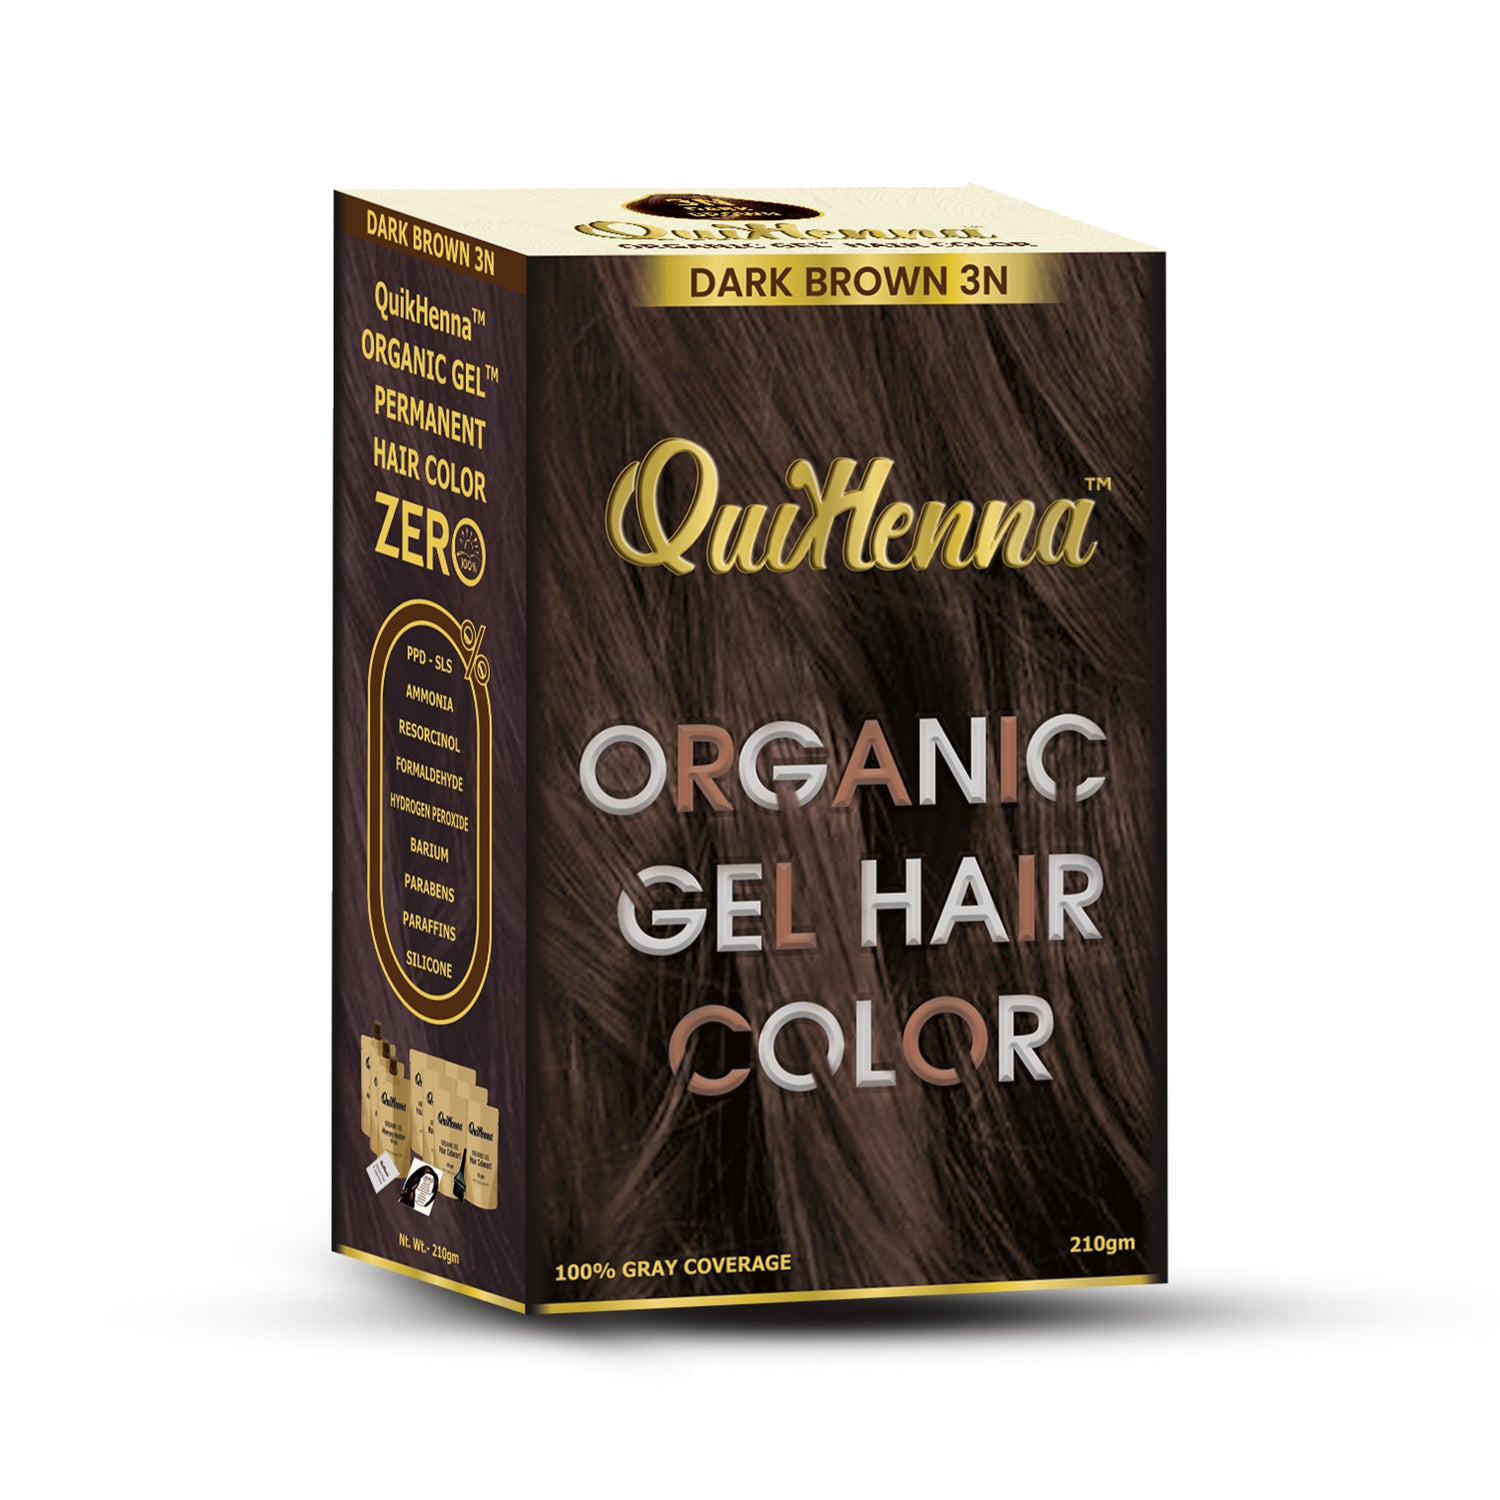 QuikHenna Organic Gel Hair Colour-41